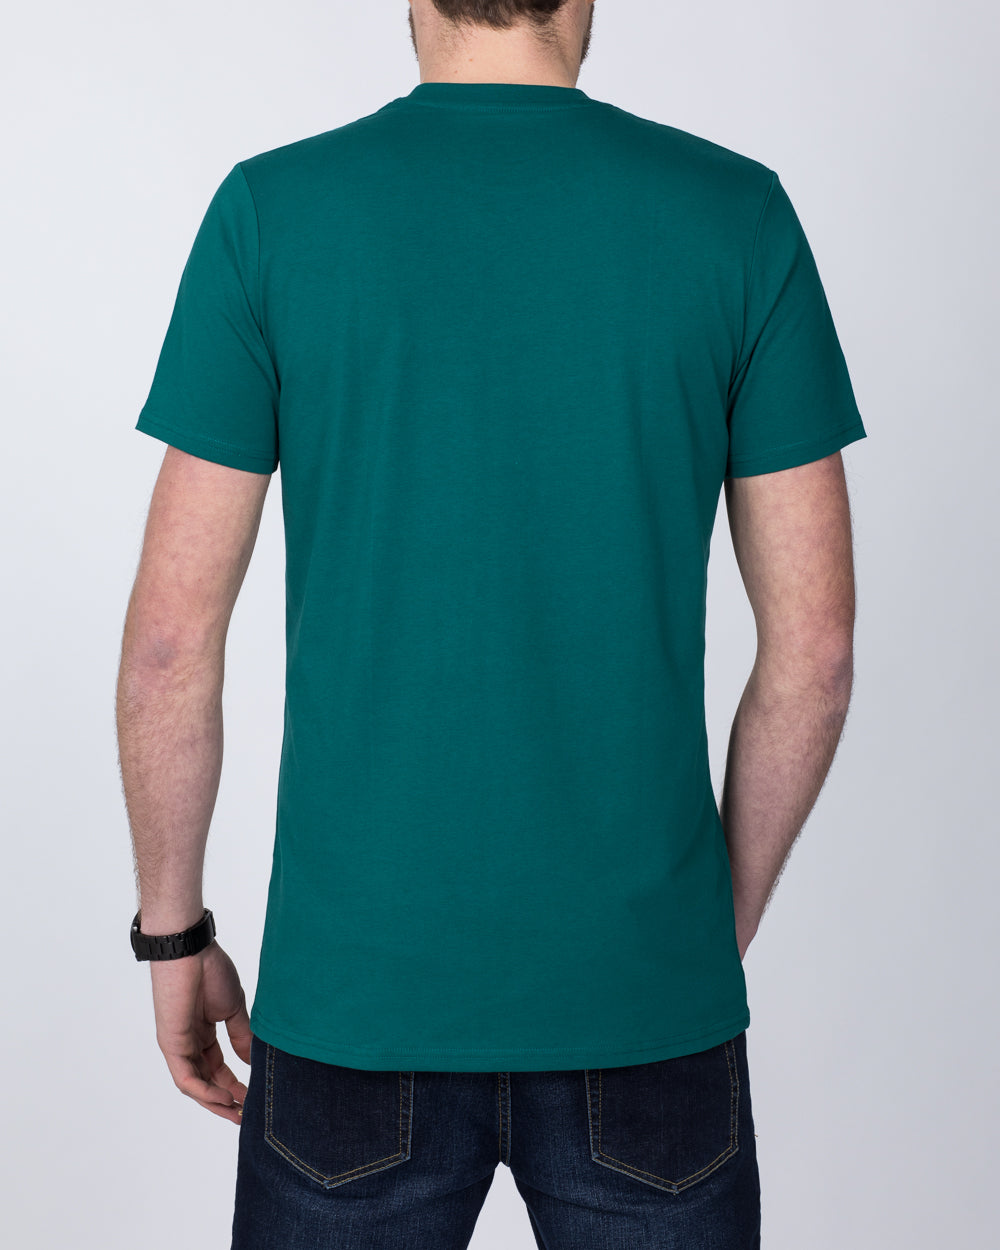 Girav Sydney Extra Tall T-Shirt (storm green)